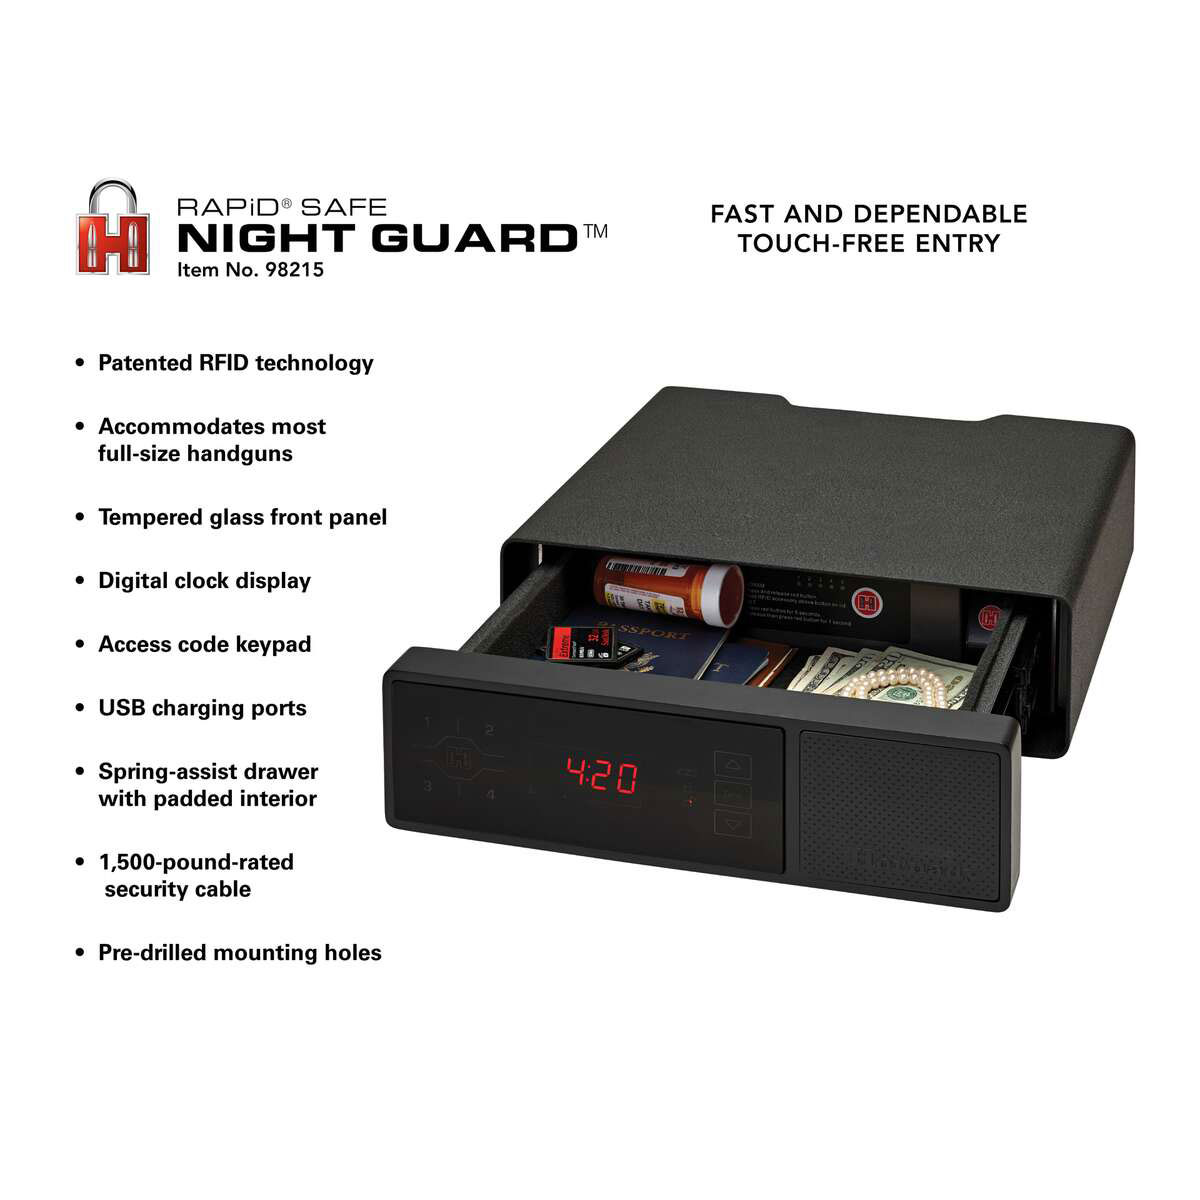 HORNADY SECURITY® RAPID® NIGHT GUARD RFID